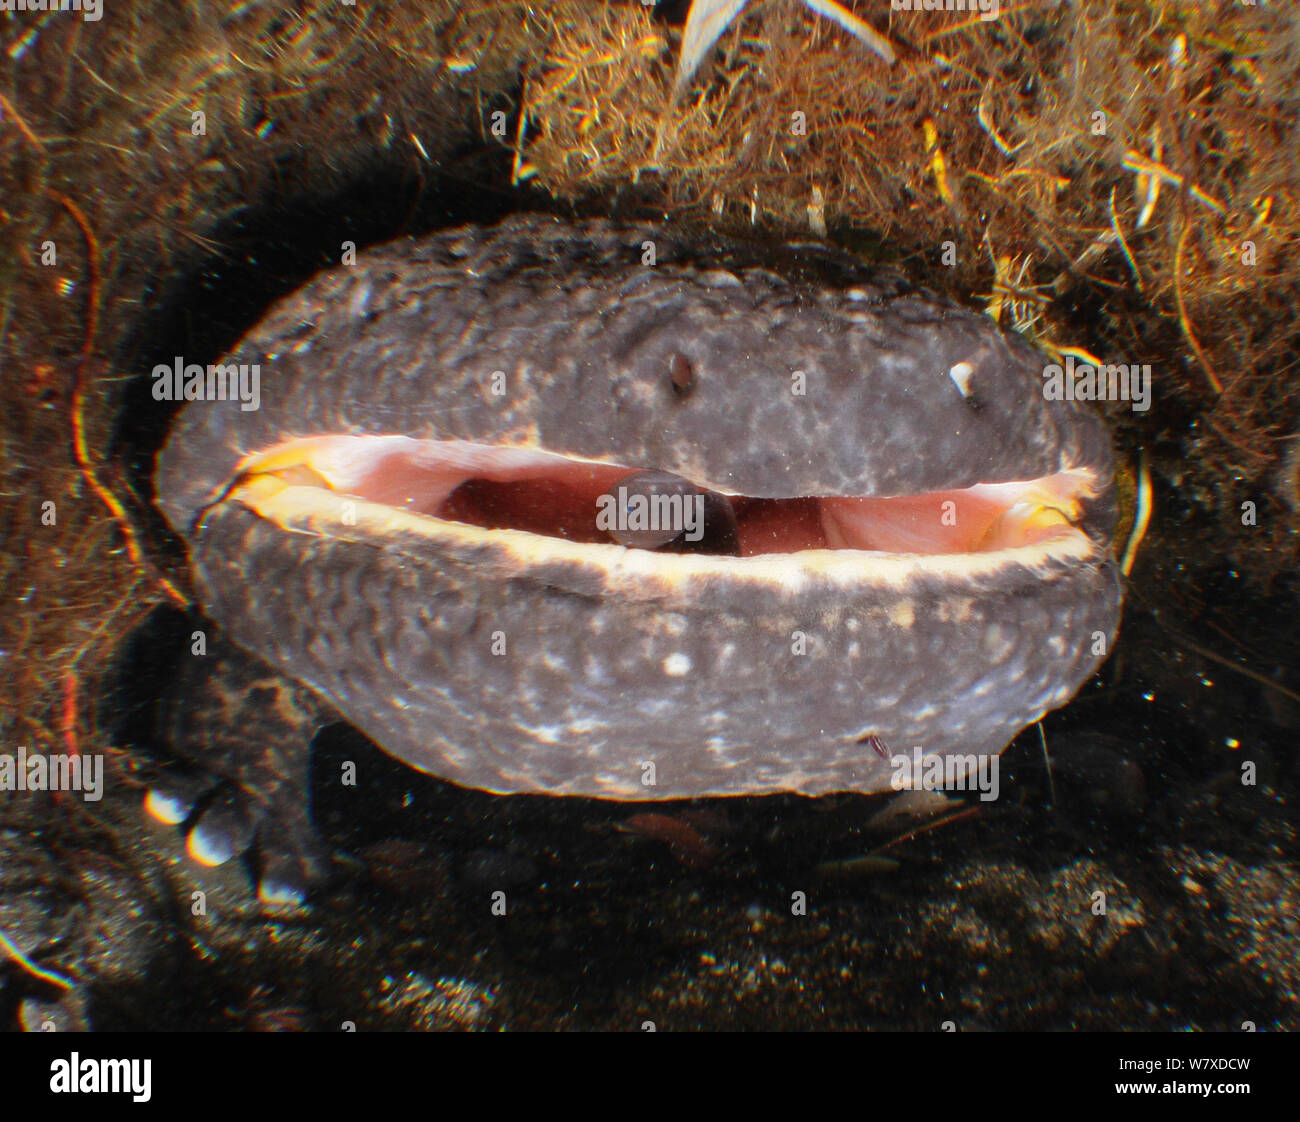 Salamandre géante du Japon (Andrias japonicus) mâle avec les jeunes dans la bouche. Hino rivière, Nichinan-chou, Tottori, Japon, mars. Banque D'Images